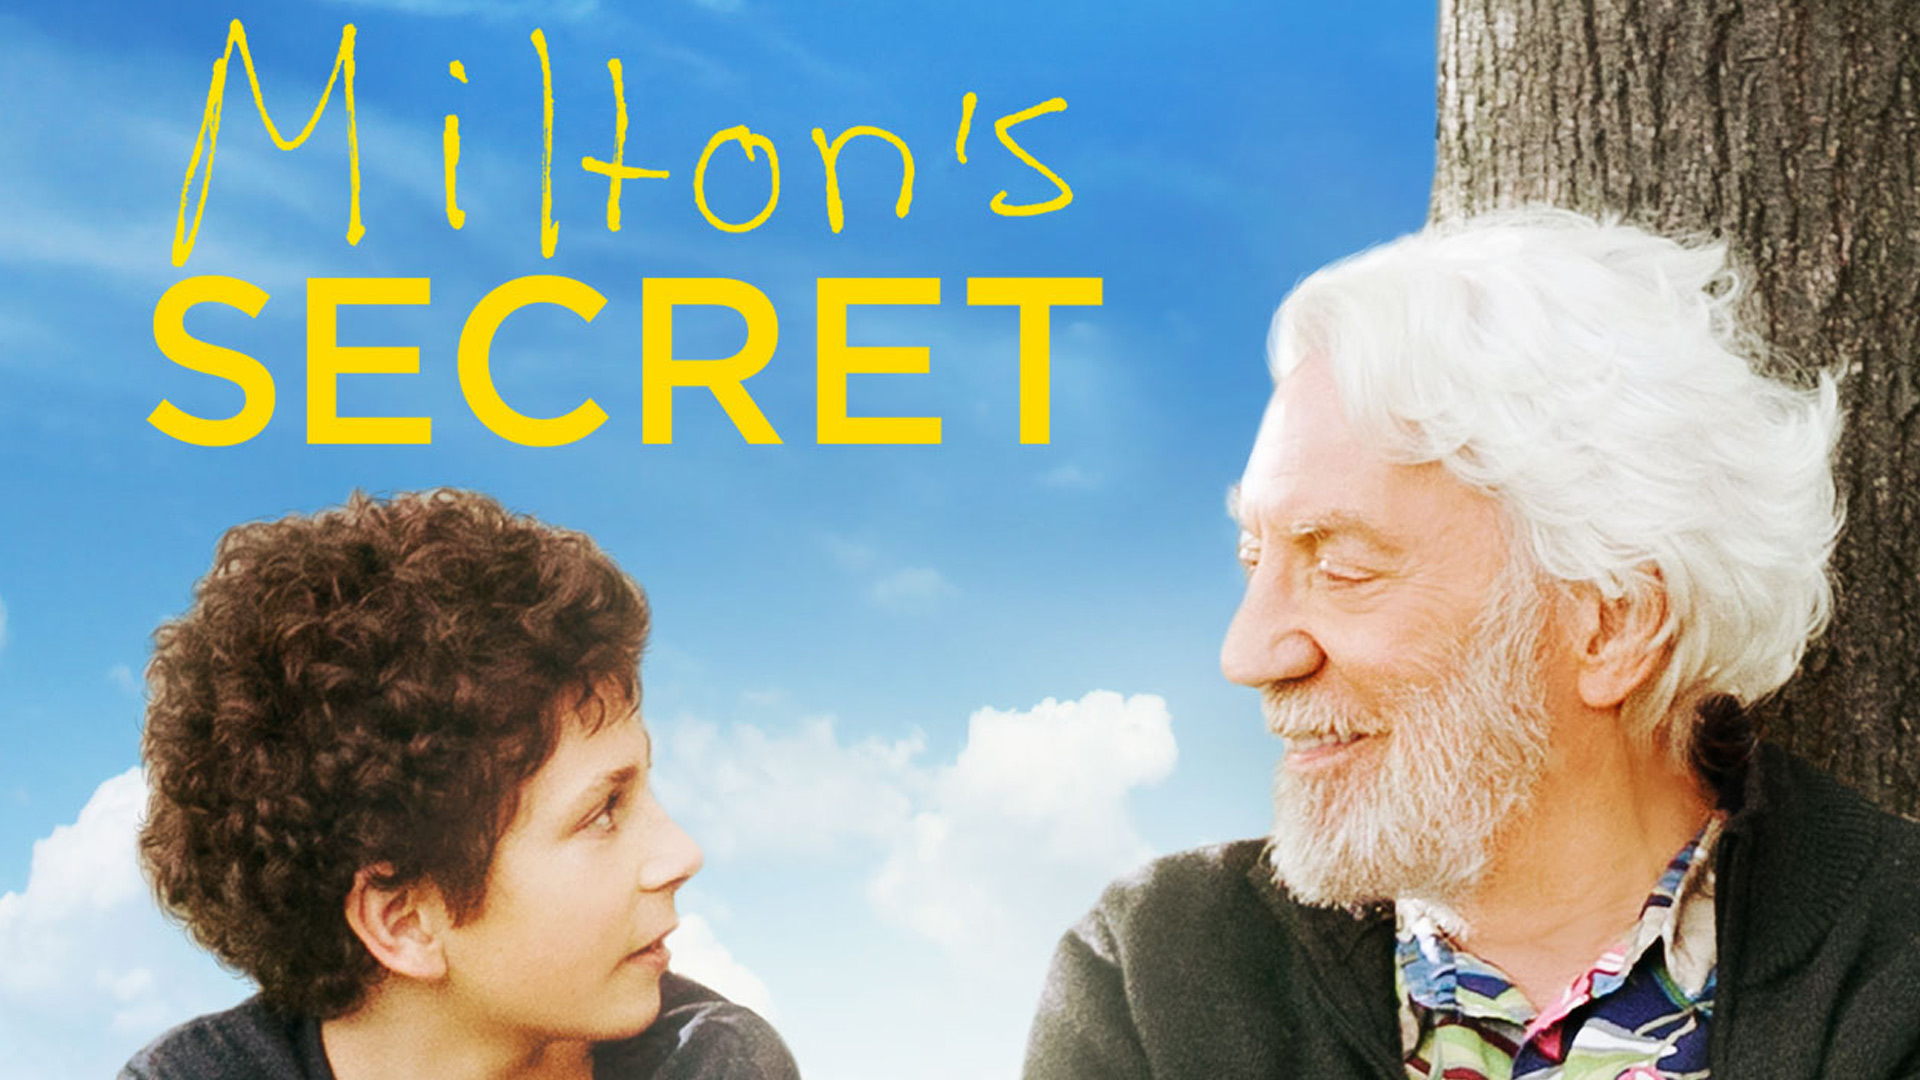 Milton’s Secret